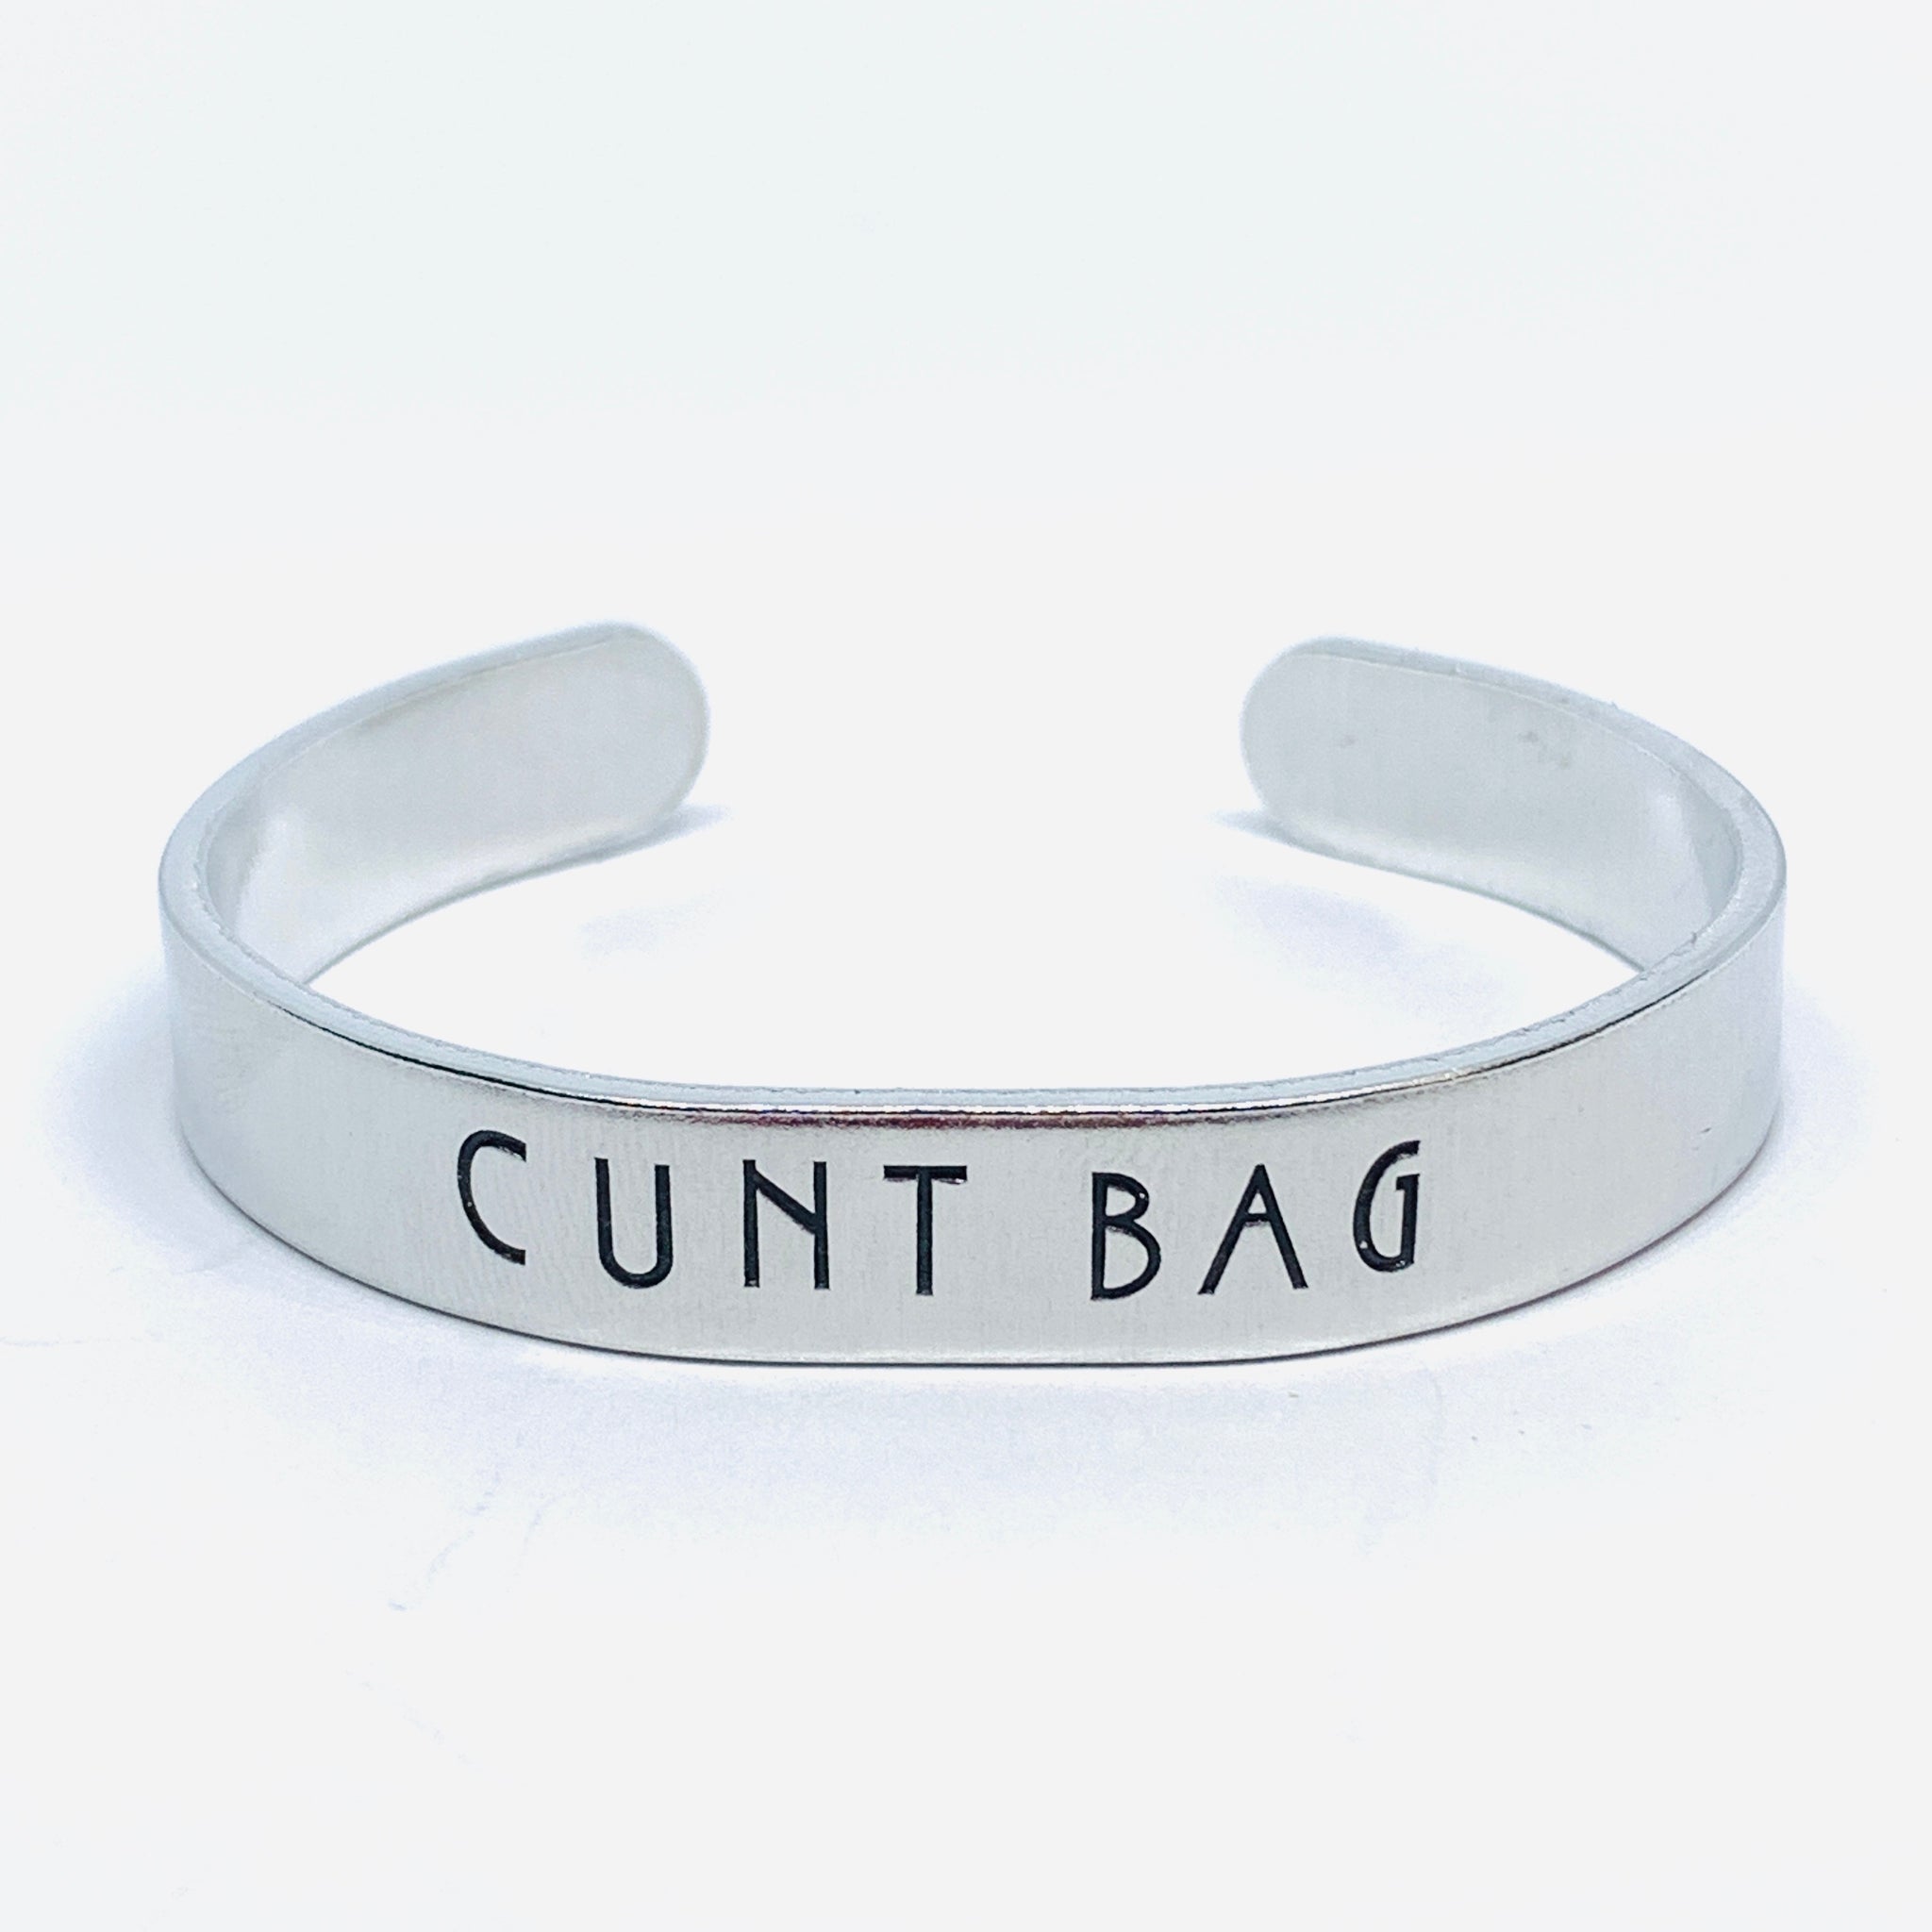 Cunt Bag - Hand Stamped Cuff Bracelet